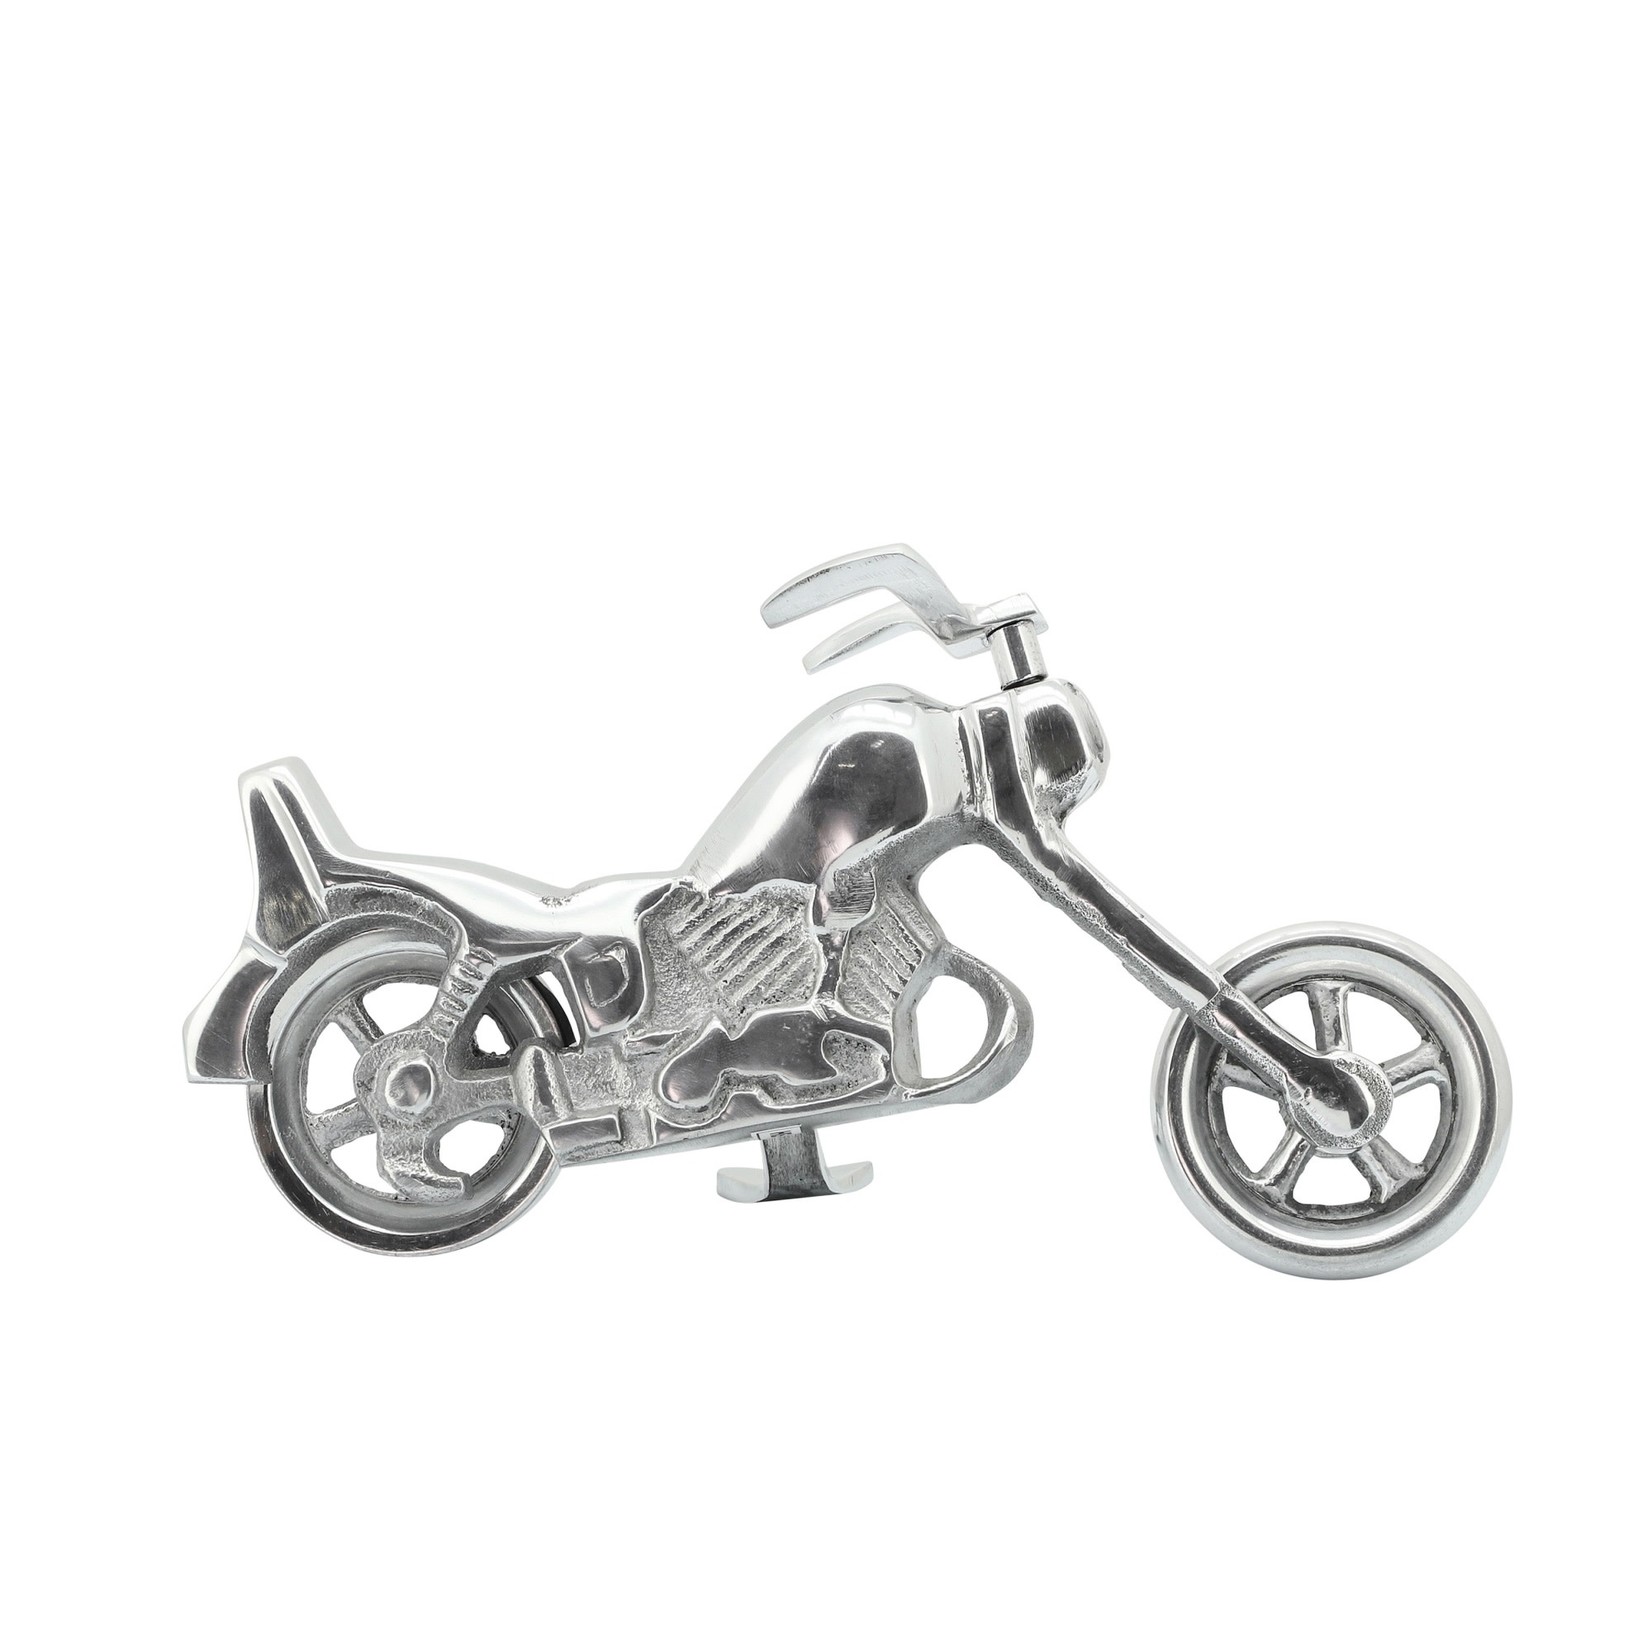 16211-01 METAL 10" MOTORCYCLE, SILVER